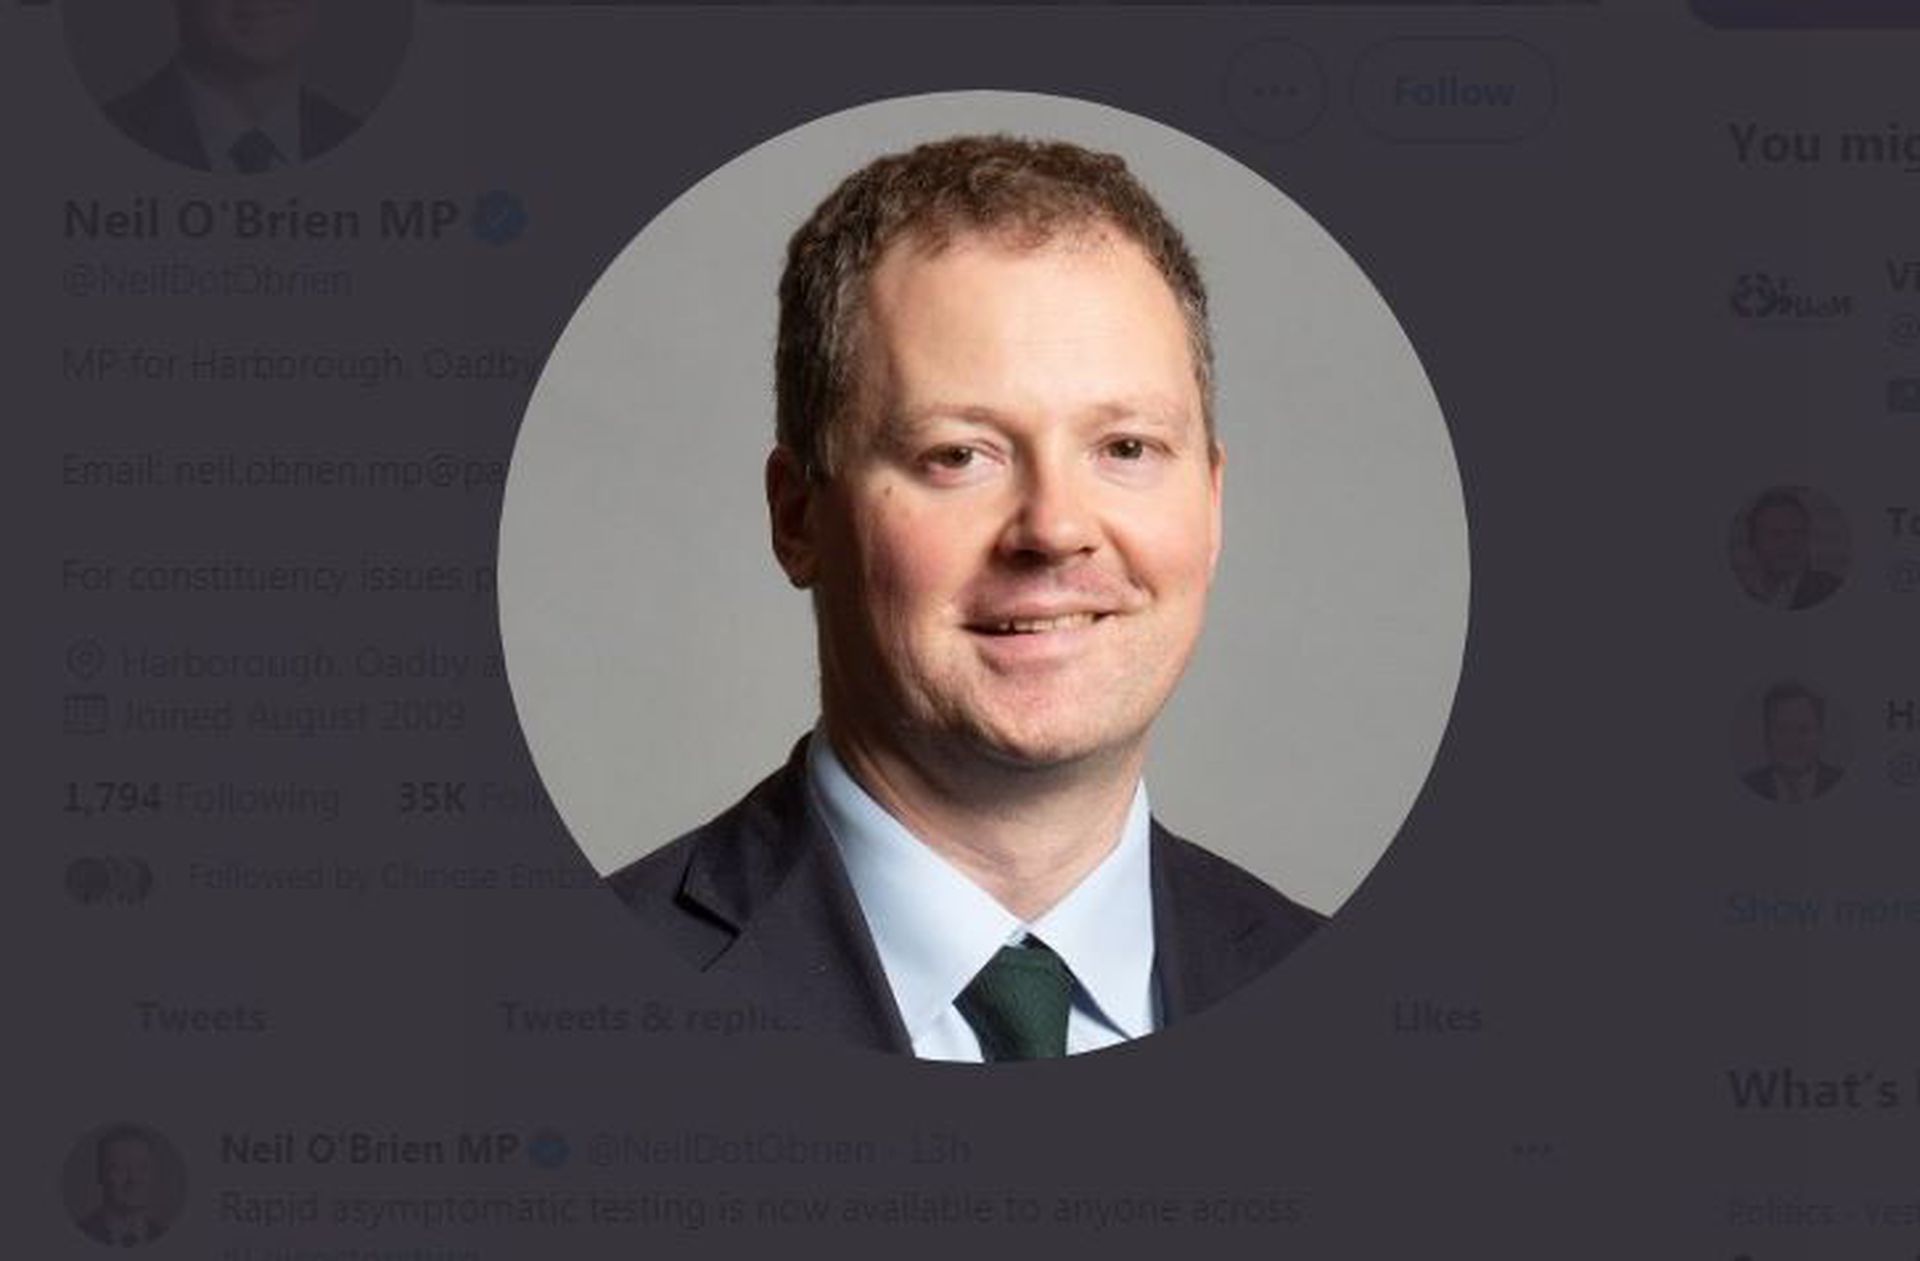 这是英国保守党议员奥布莱恩。（Twitter@ Neil O'Brien MP截图）